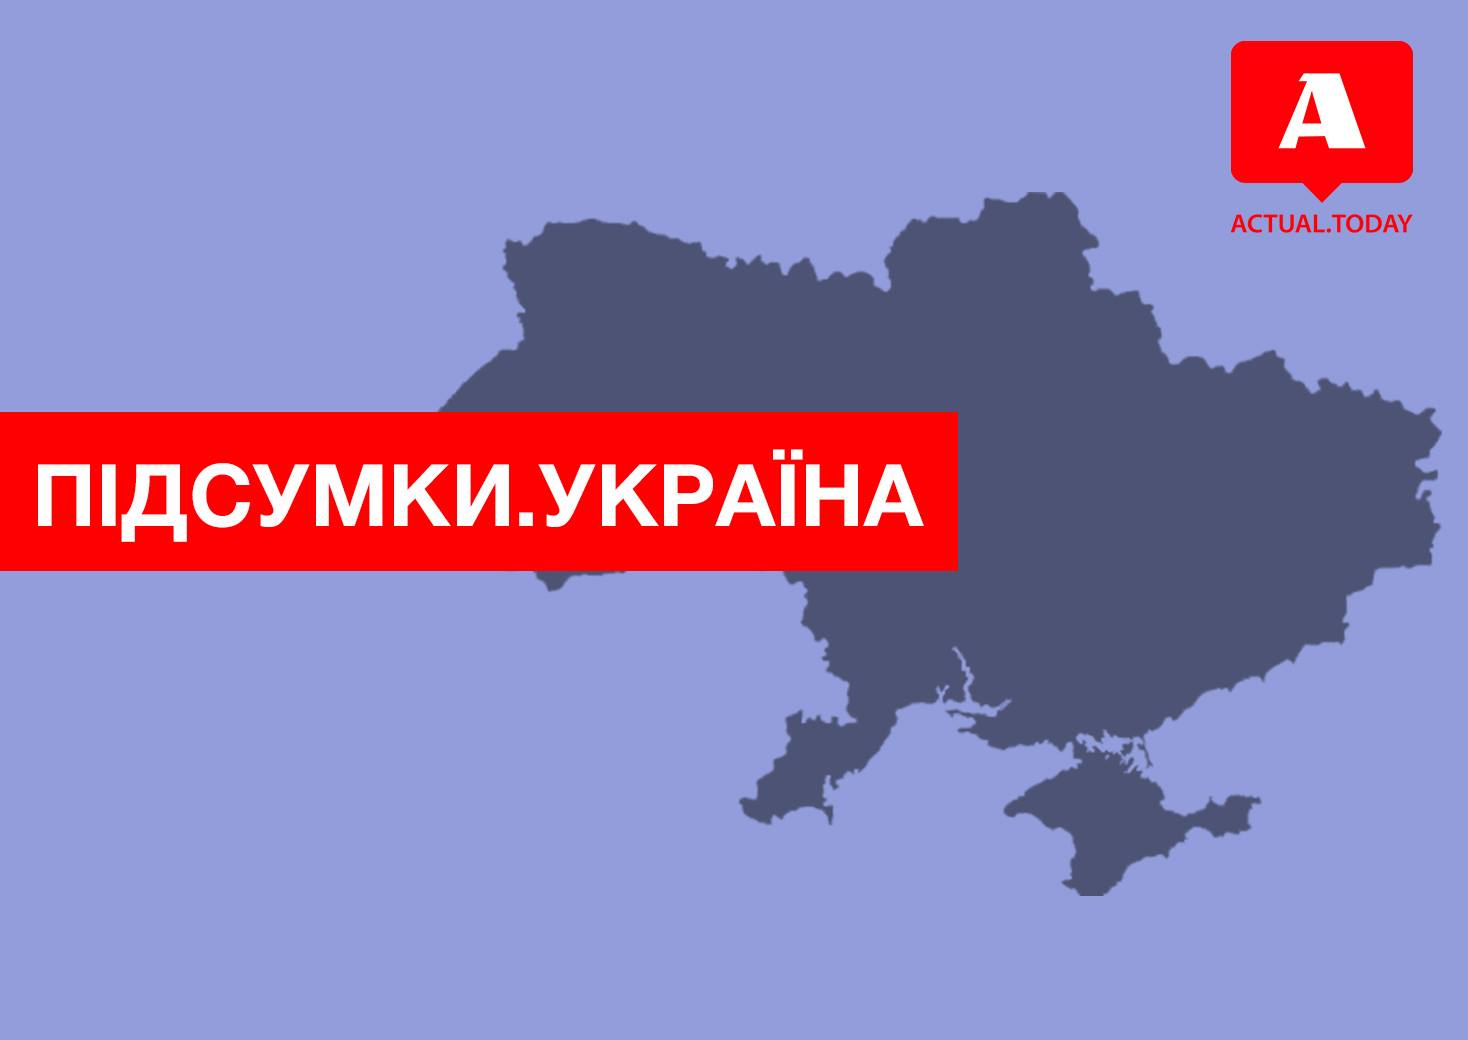 Вступил в действие новый закон о ЖКХ, смена мобильного оператора без изменения номера телефона, Одесса под усиленной охраной – главные новости Украины за среду